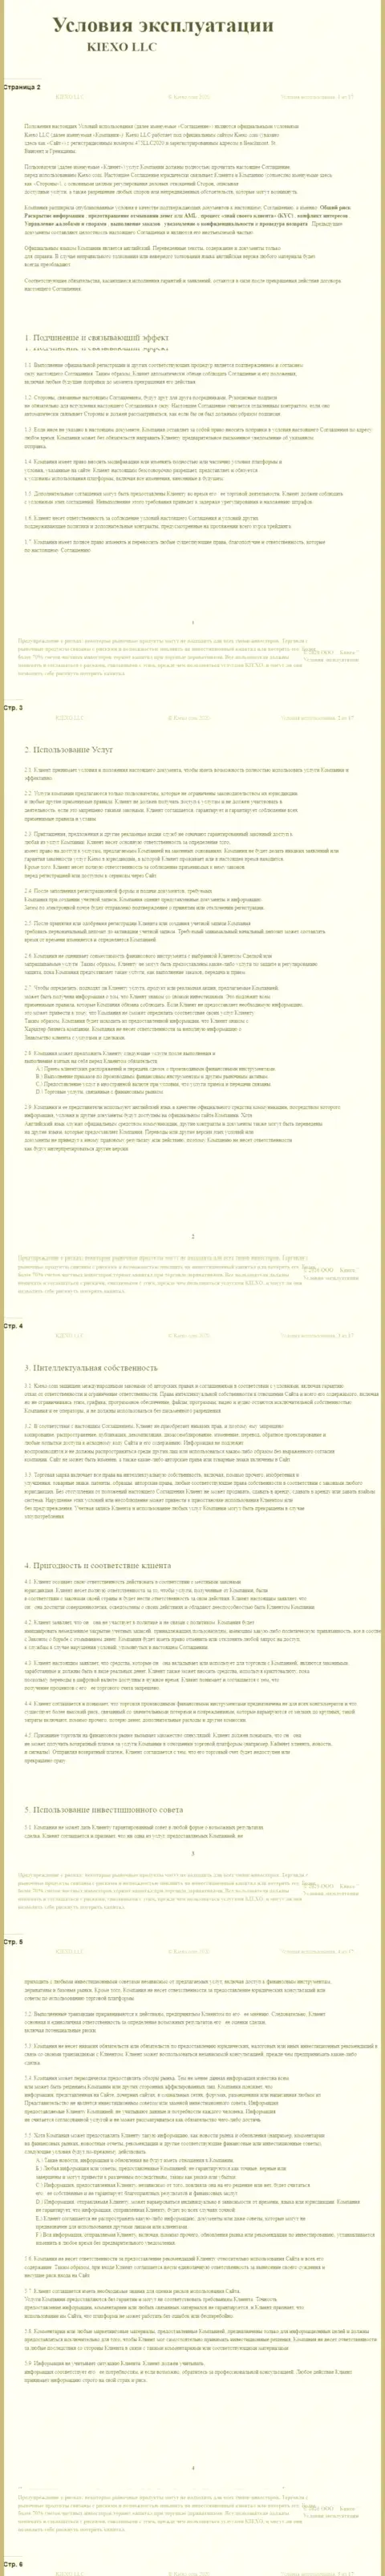 Клиентское соглашение Форекс дилингового центра KIEXO (часть 1)